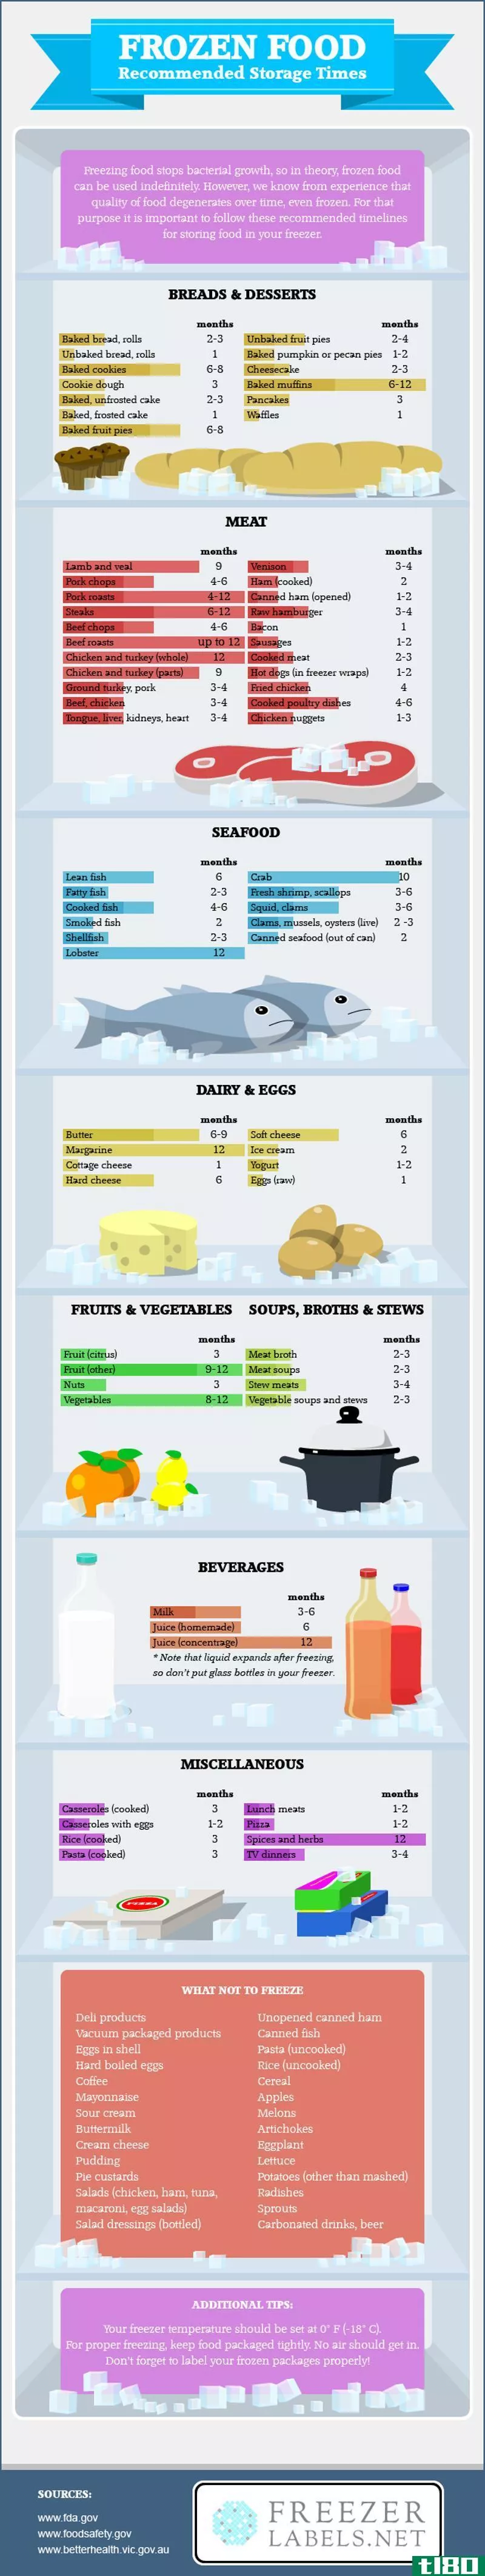 这个信息图表显示了冷冻食品在你的冰箱里能保存多久